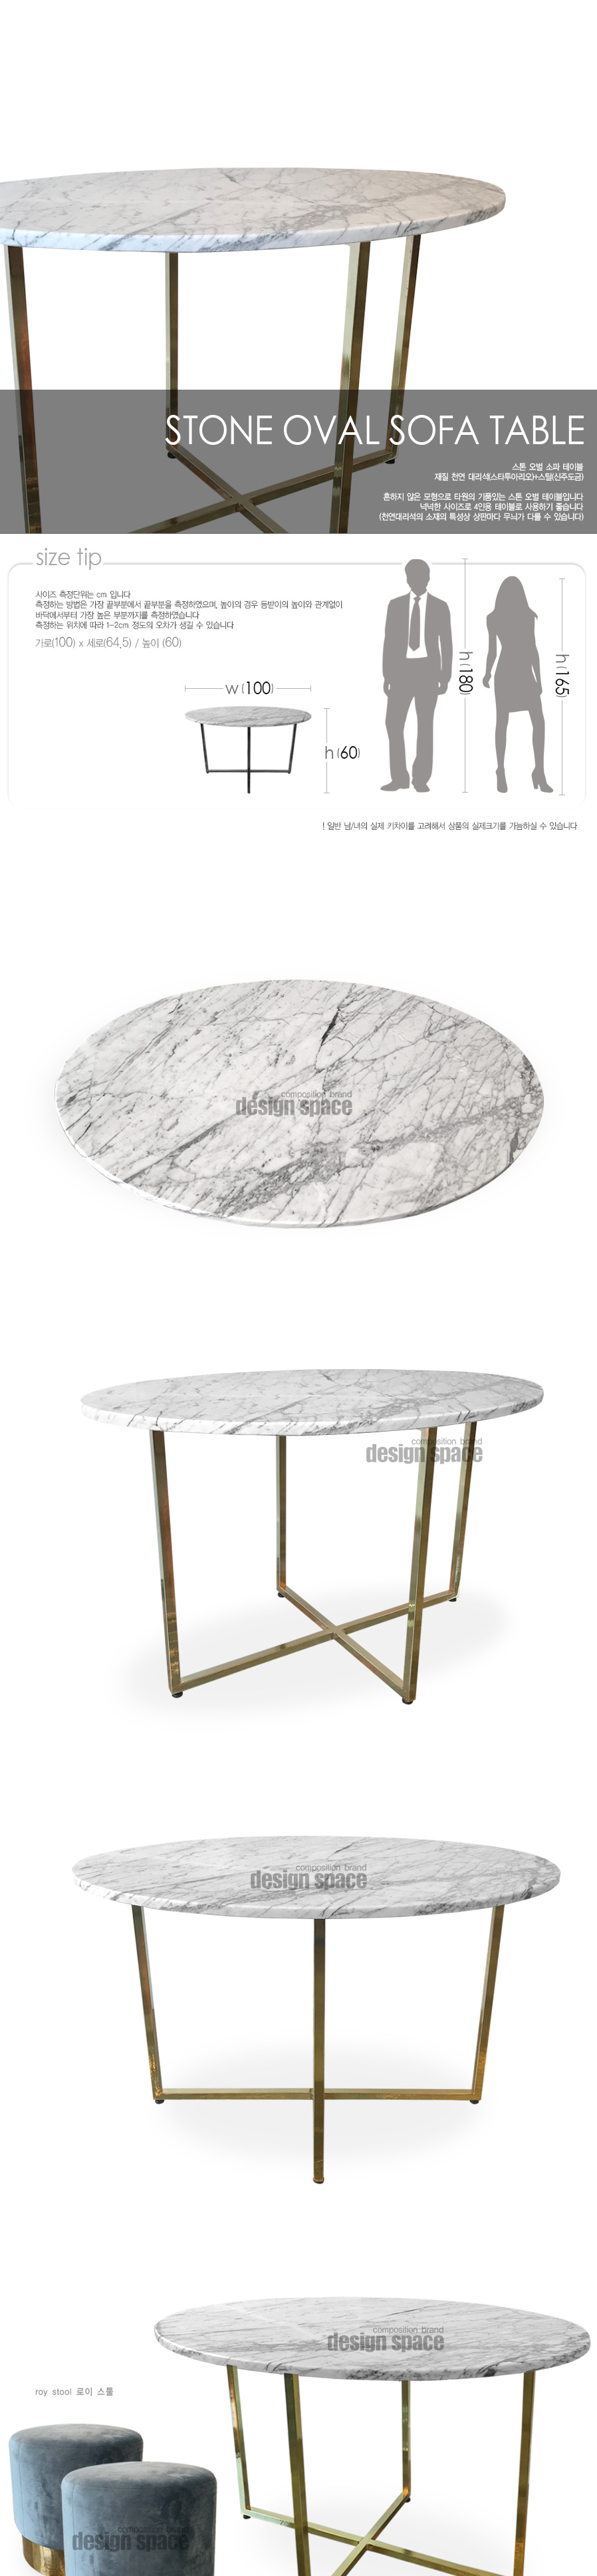 stone-oval-sofa-table_01.jpg